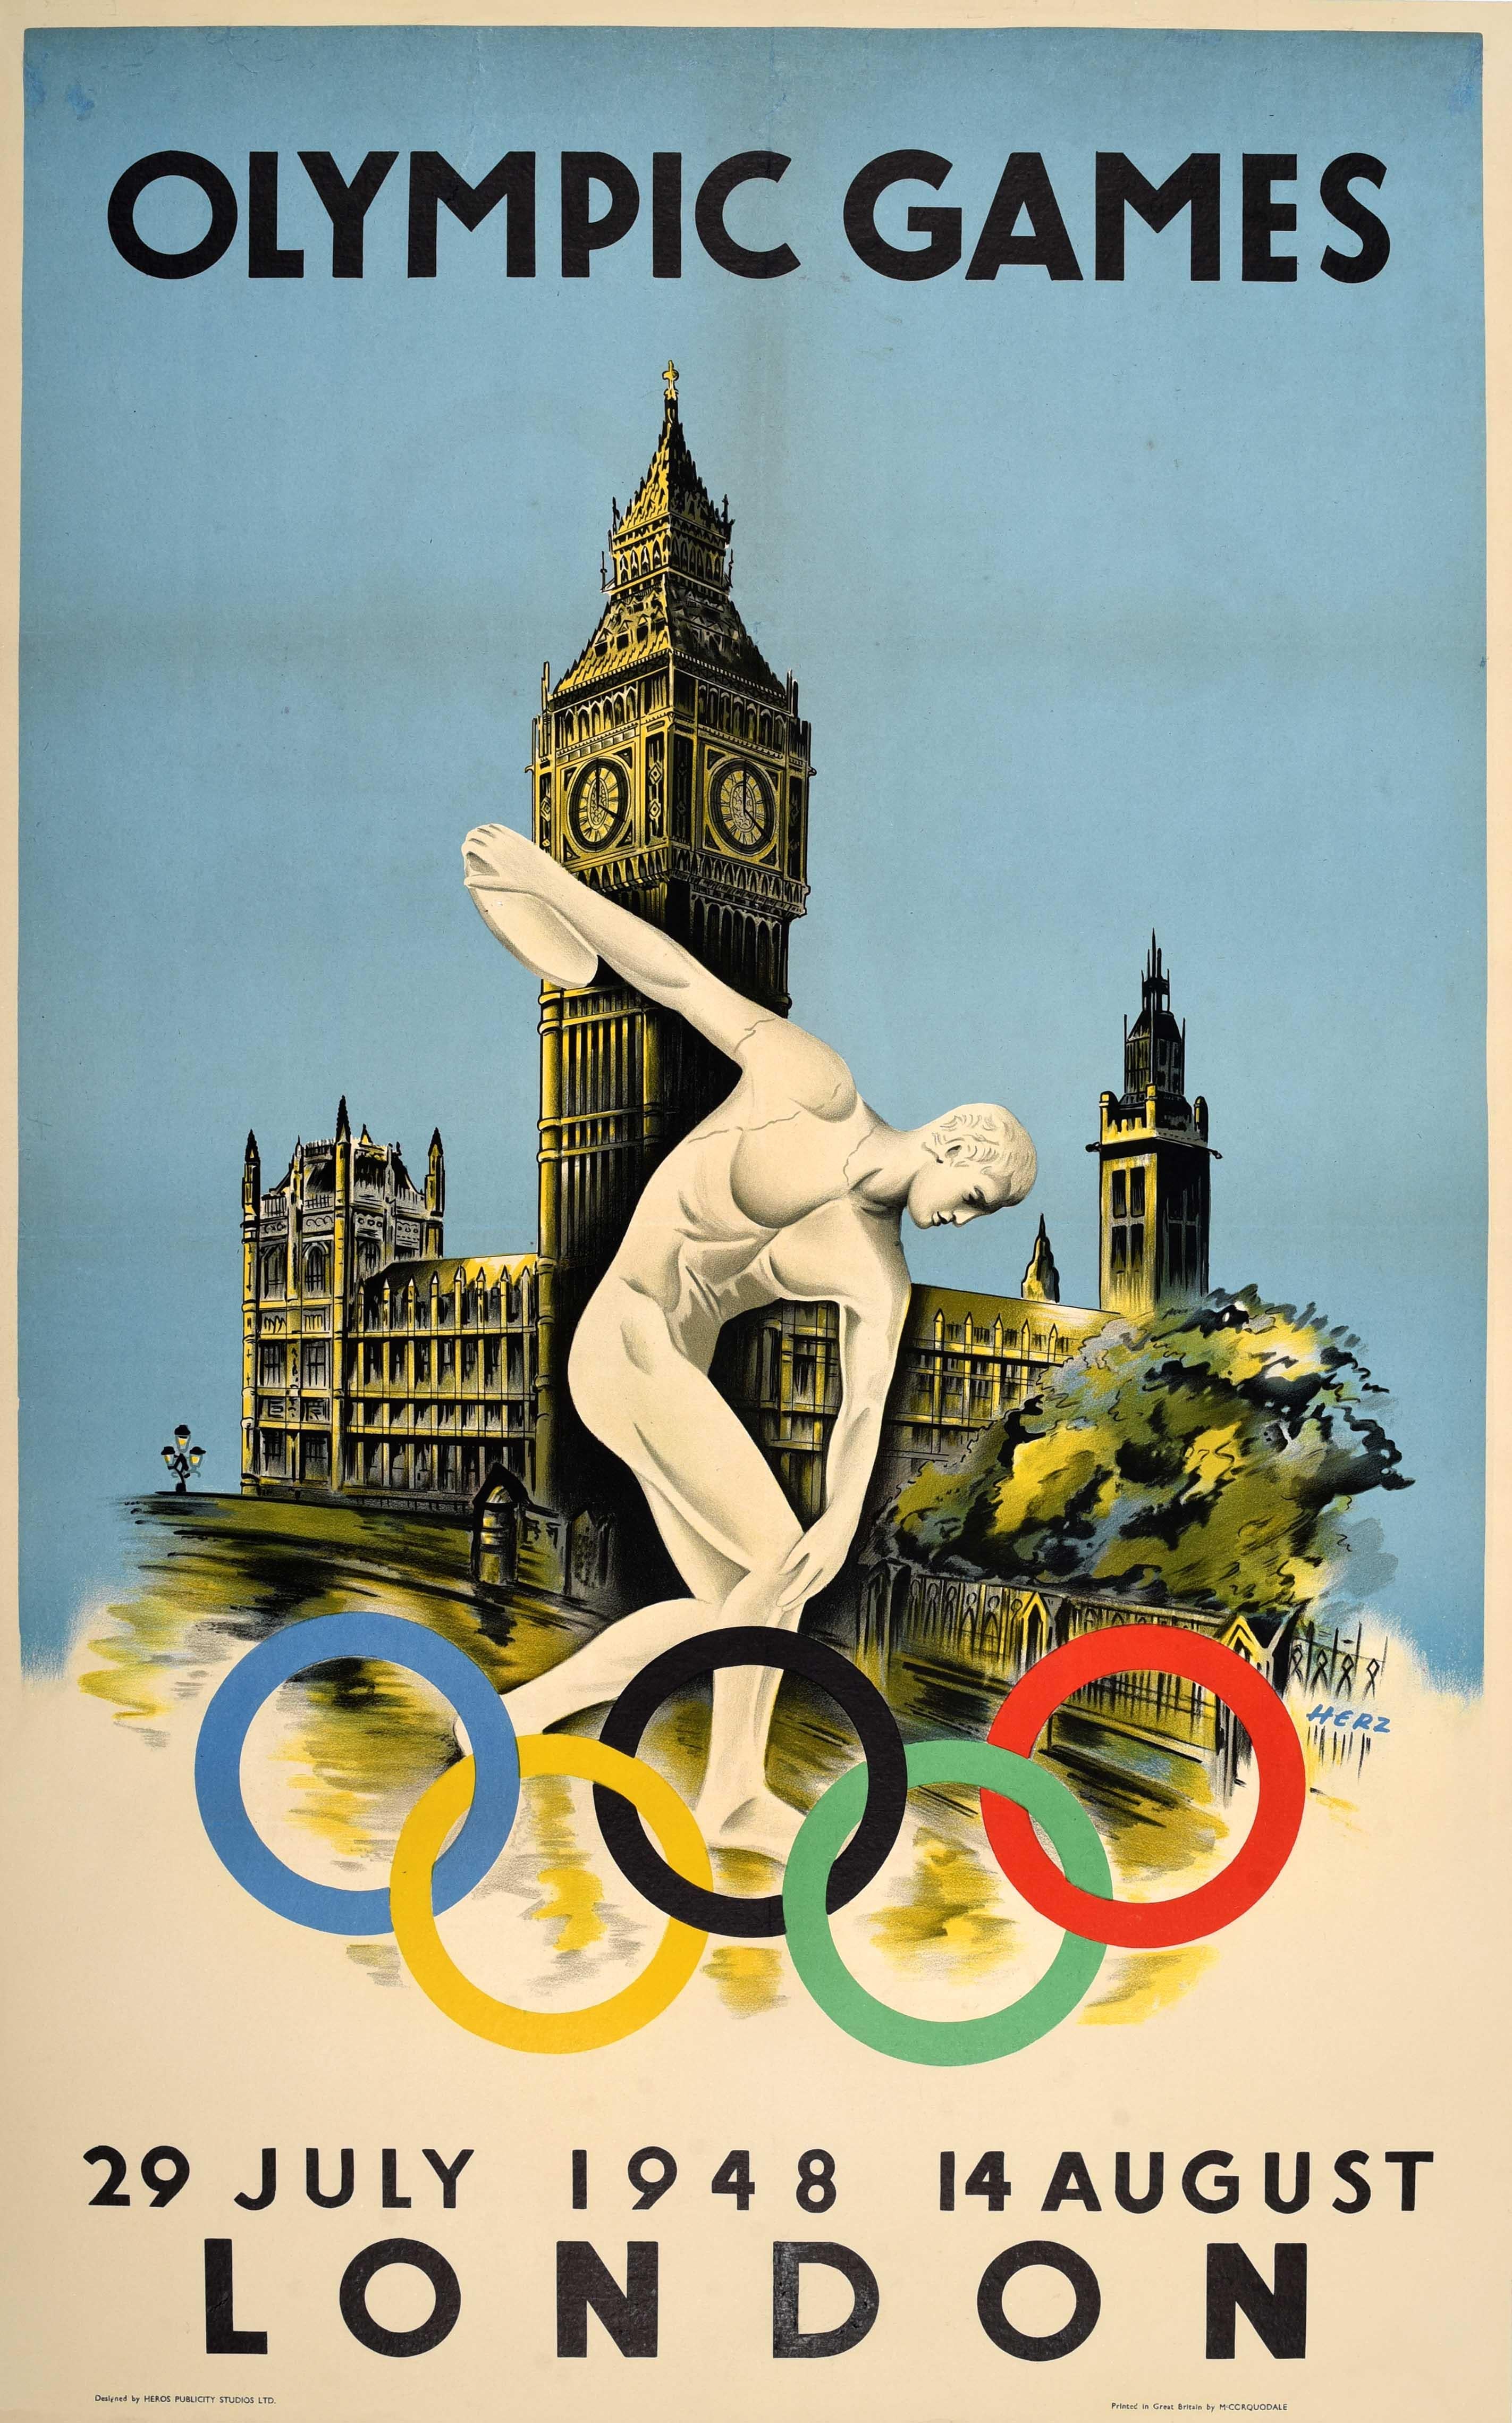 Originales Vintage-Plakat für die Olympischen Spiele 1948 in London, die vom 29. Juli bis 14. August stattfanden, die ersten Spiele nach dem Zweiten Weltkrieg. Das ikonische Design von Walter Herz (geb. 1909) zeigt die altgriechische Statue des